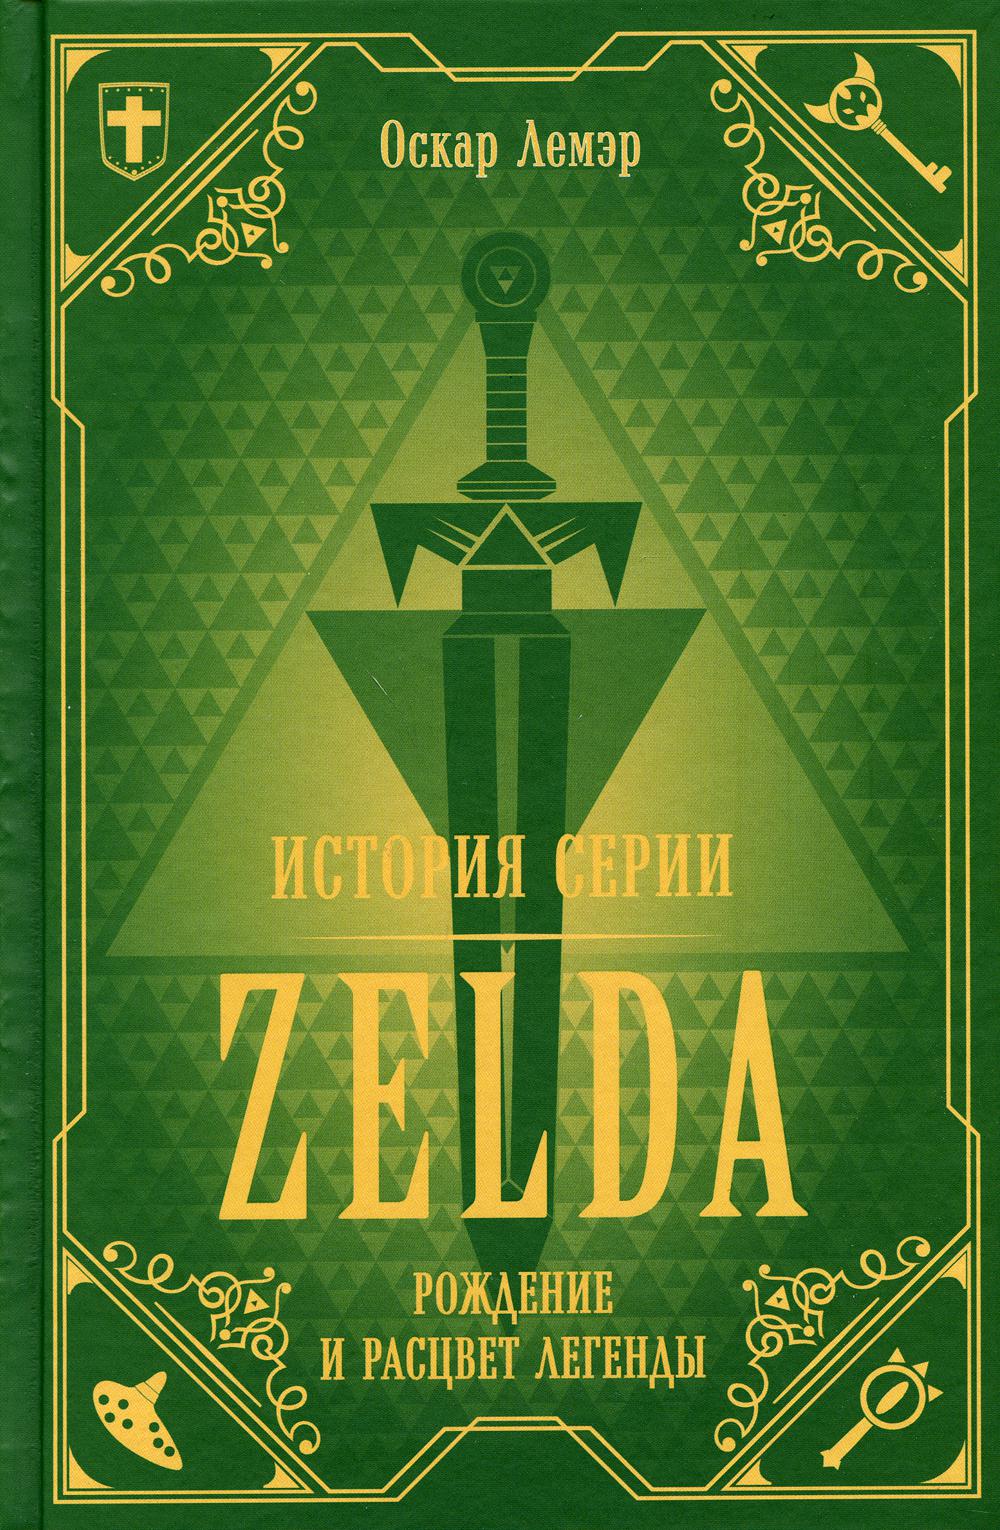   Zelda.    